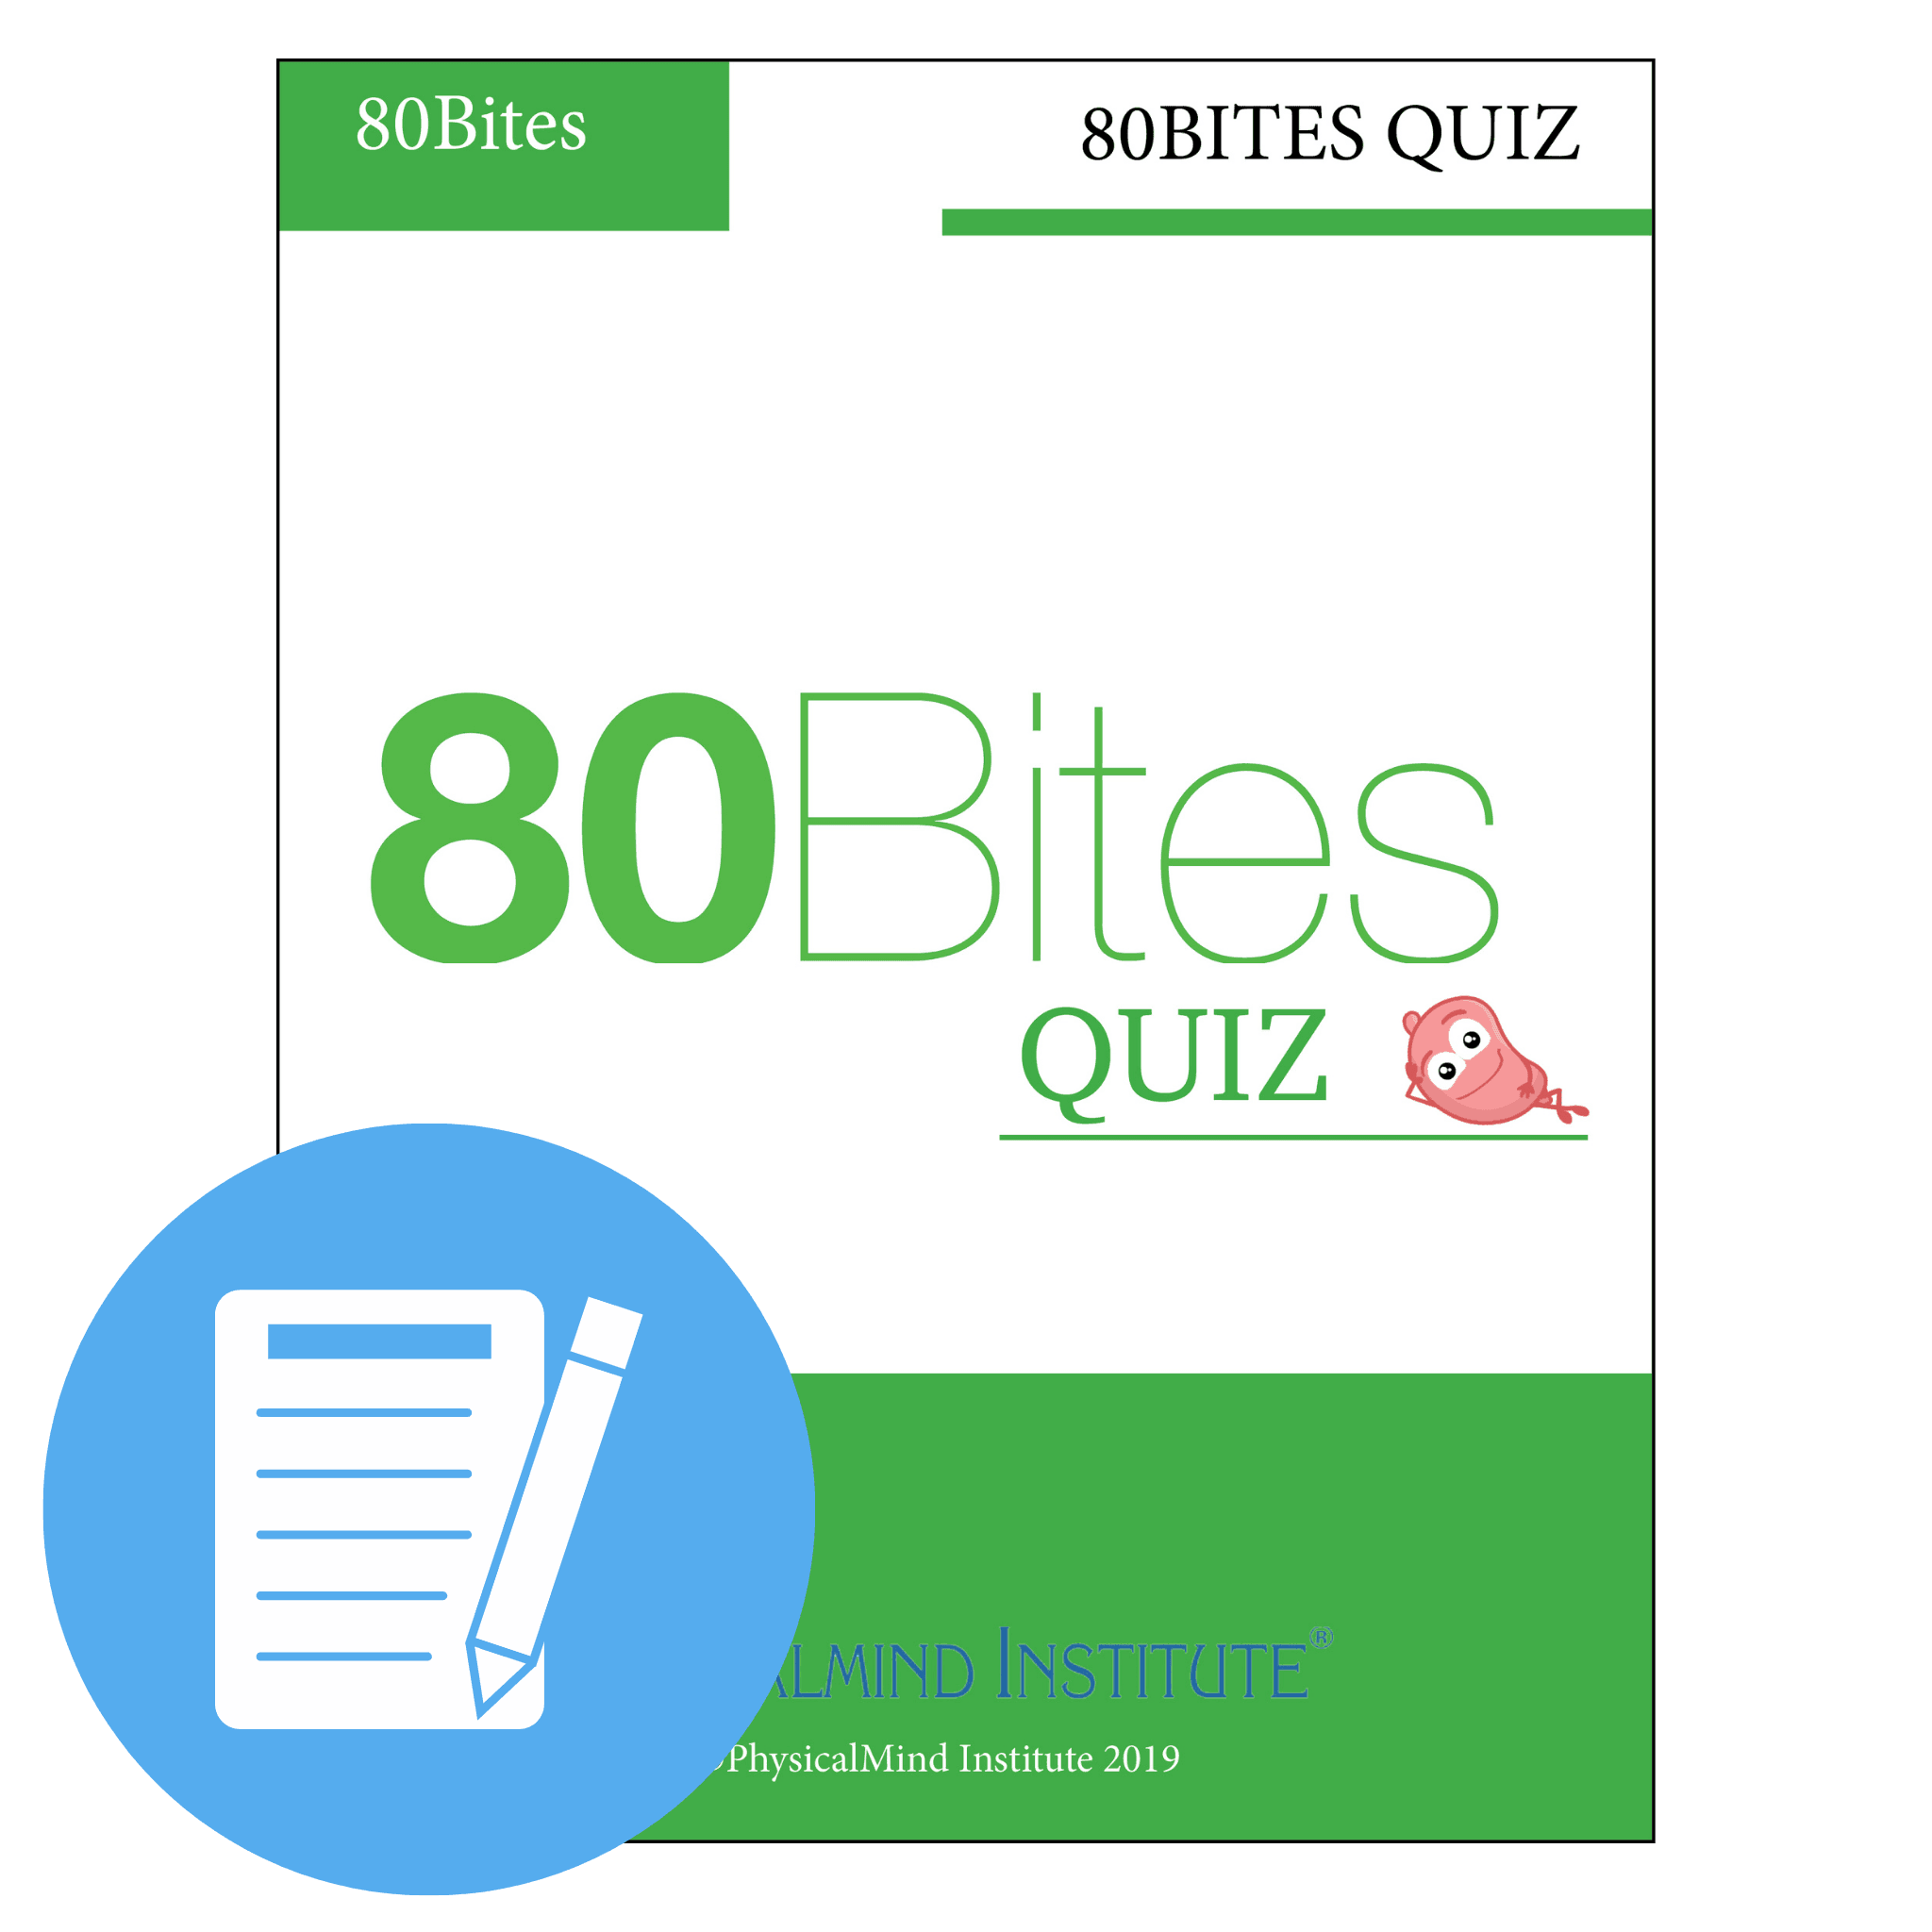 80BITES Quiz - PhysicalMind Institute